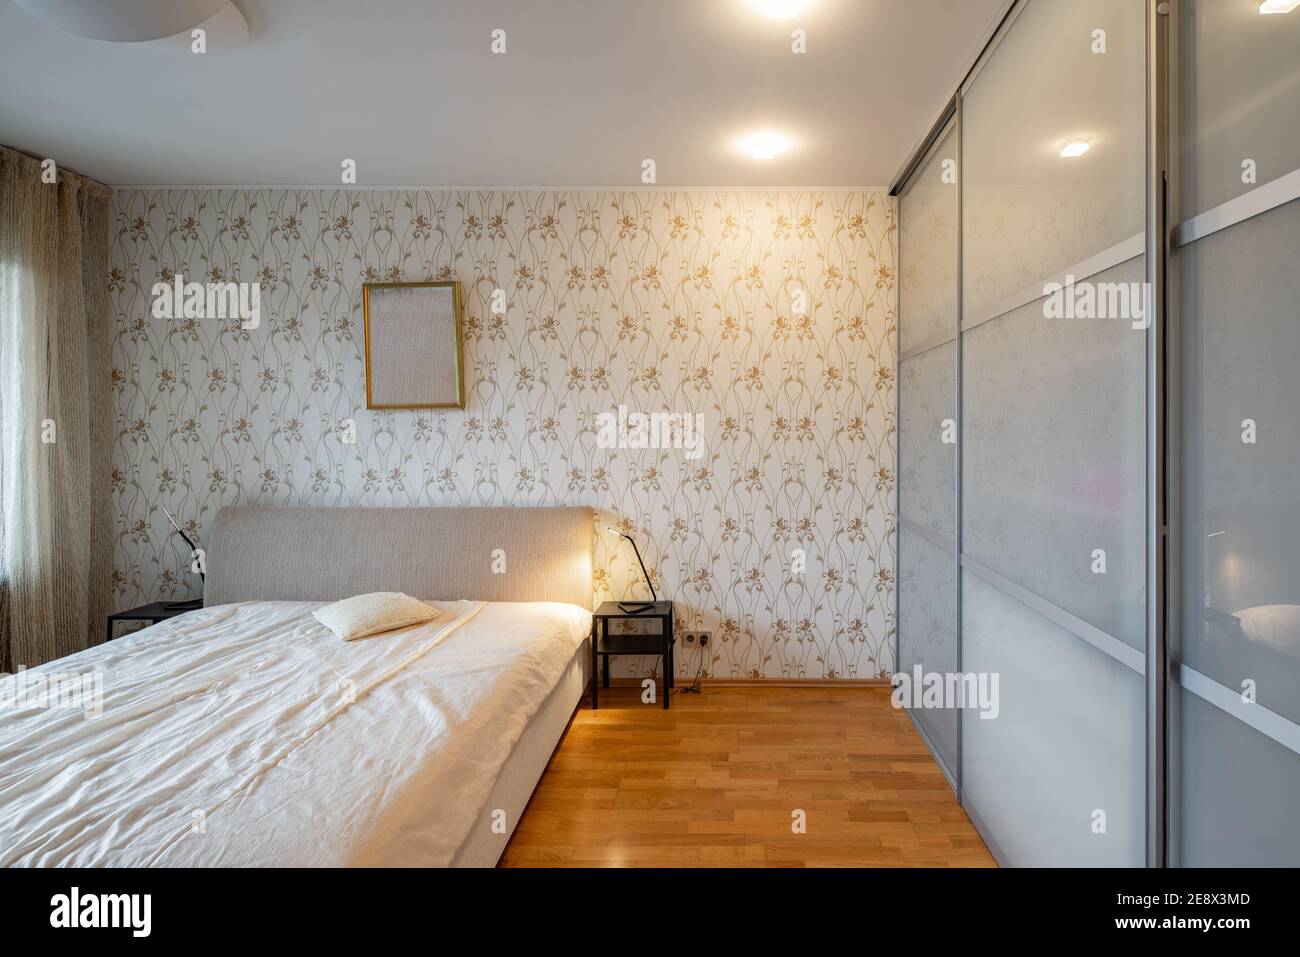 Moderne Innenausstattung des Schlafzimmers in einer Luxuswohnung.  Gemütliches Bett. Nachttische. Riesiger Schrank mit Schiebetüren  Stockfotografie - Alamy